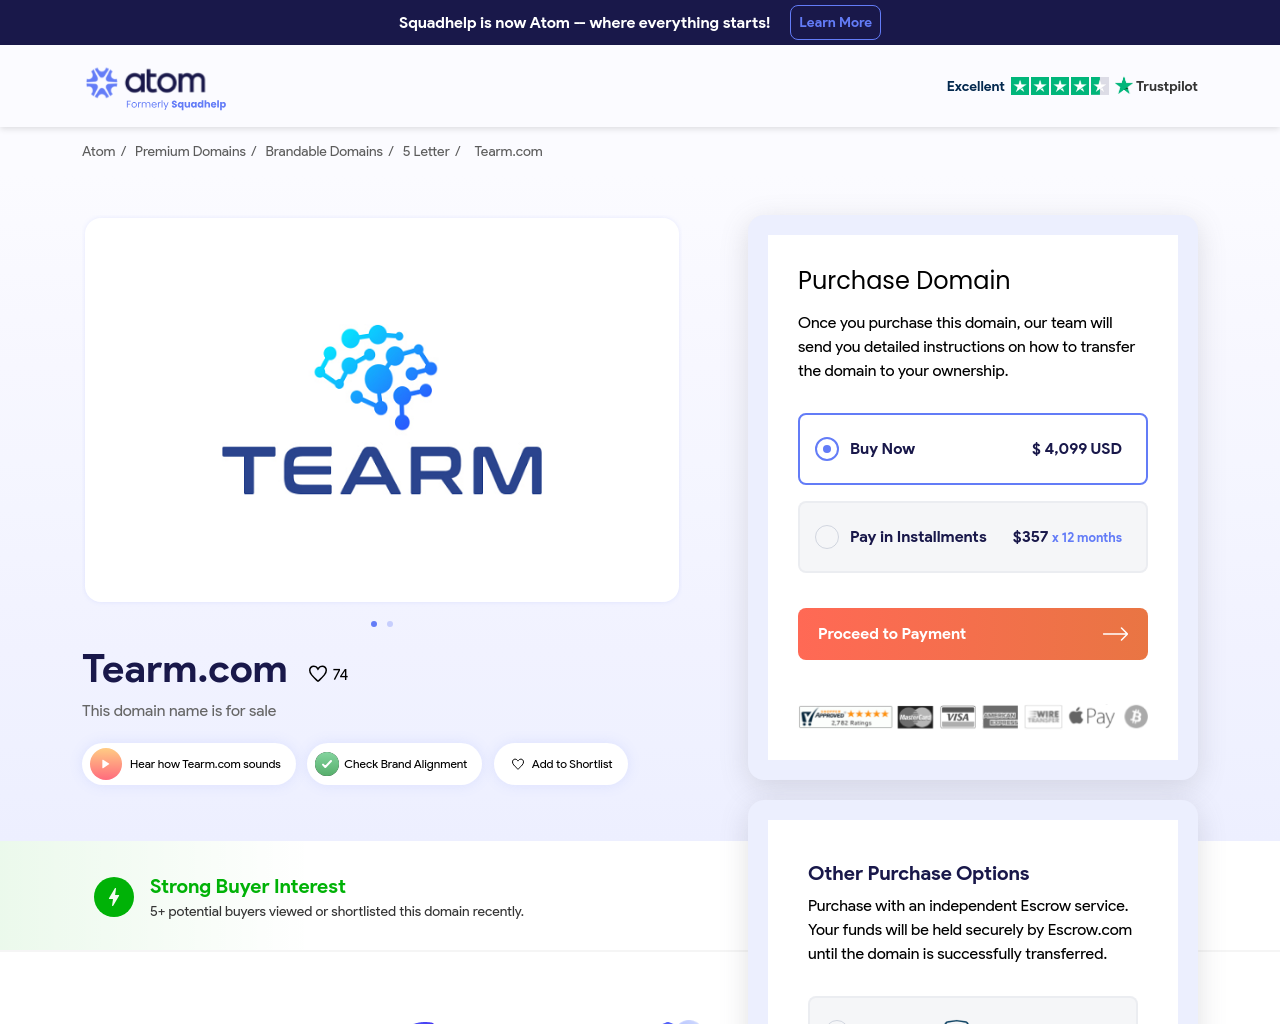 tearm.com